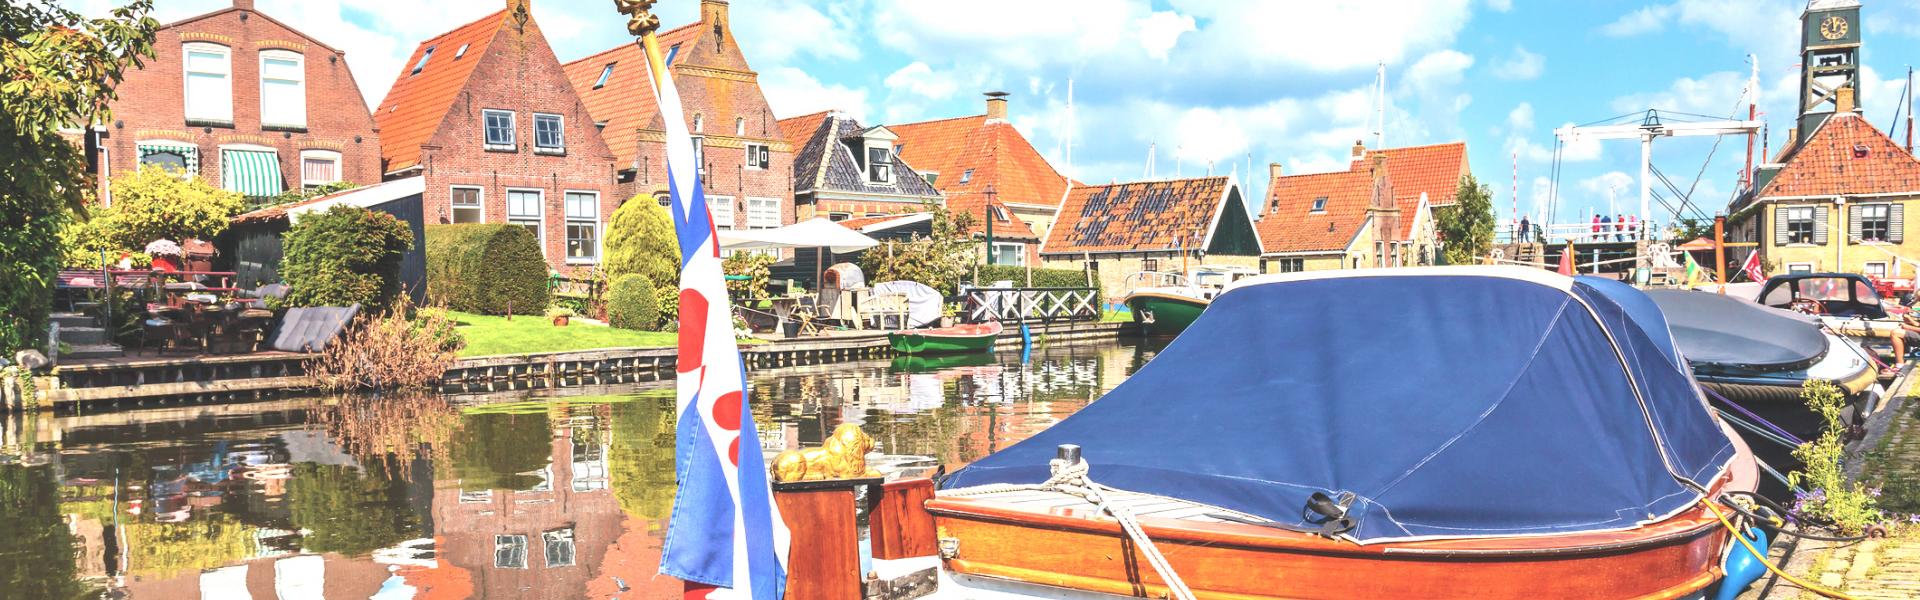 Ferienwohnungen und Ferienhäuser in Friesland - Wimdu